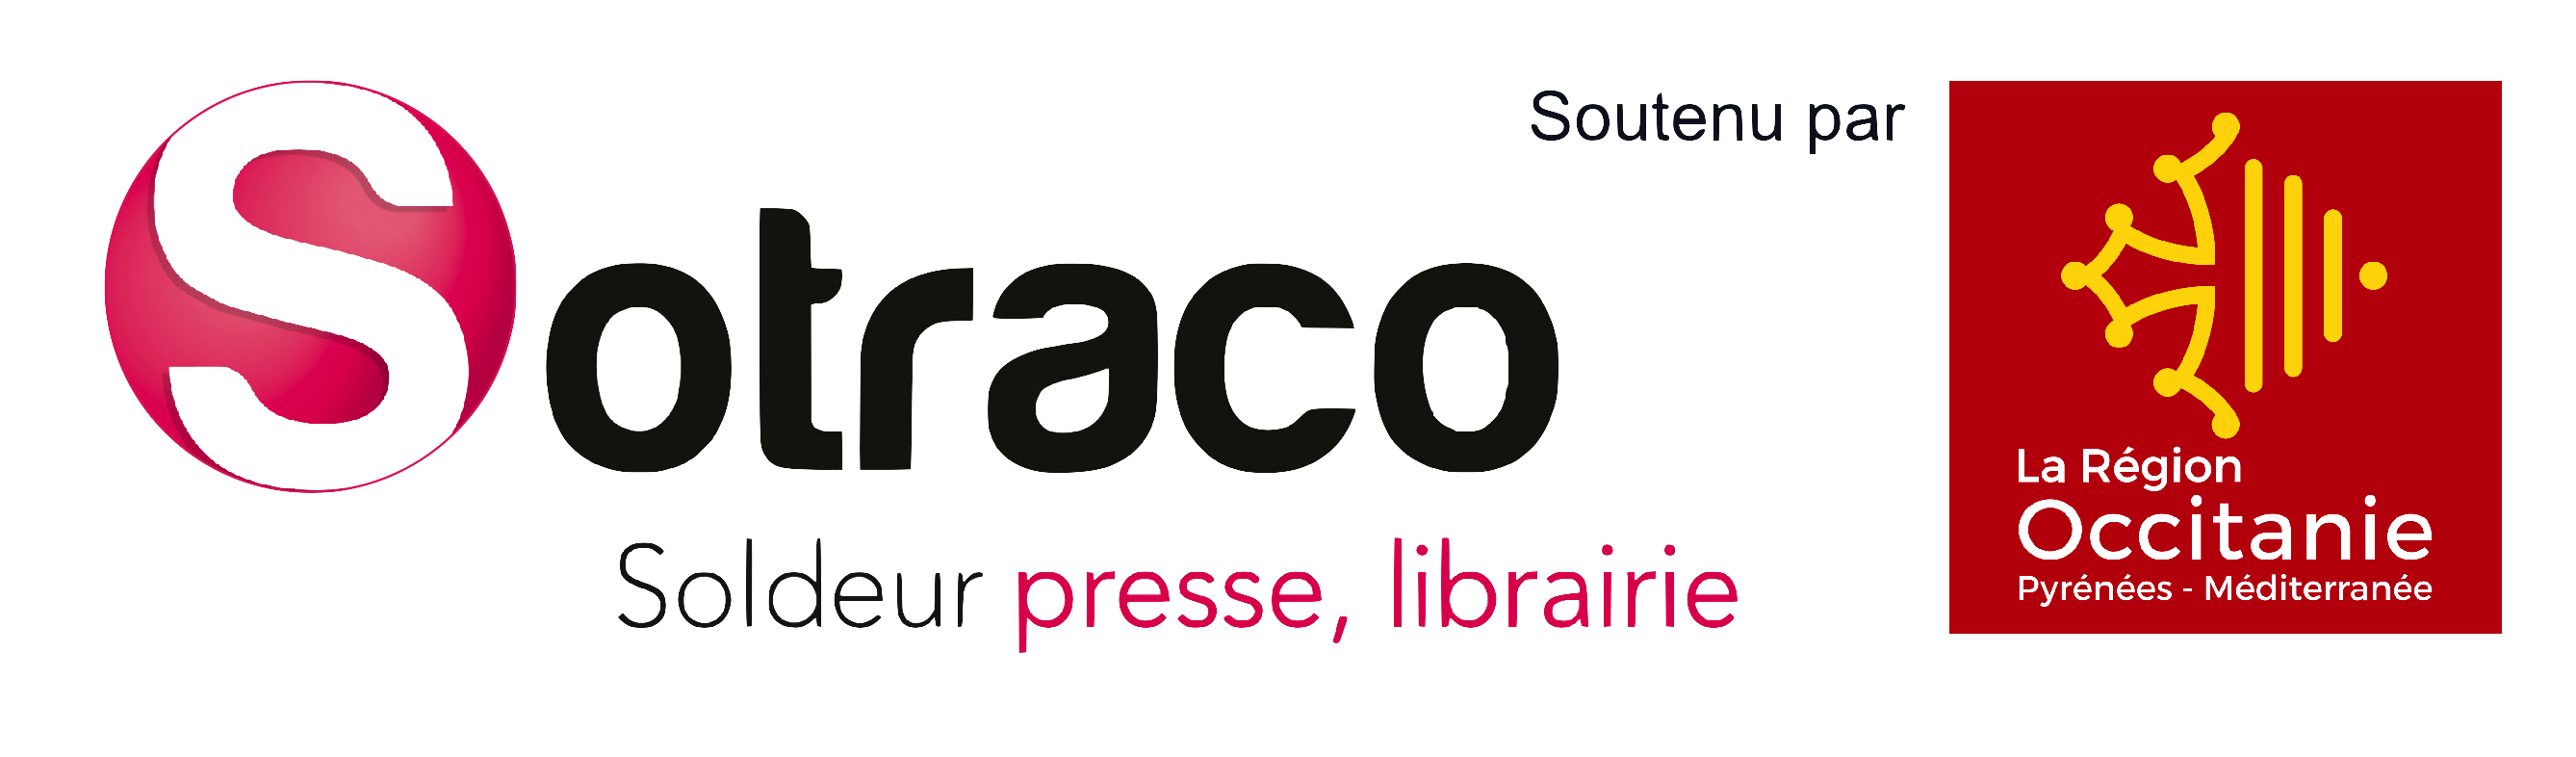 SOTRACO Soldeur Presse, Librairie